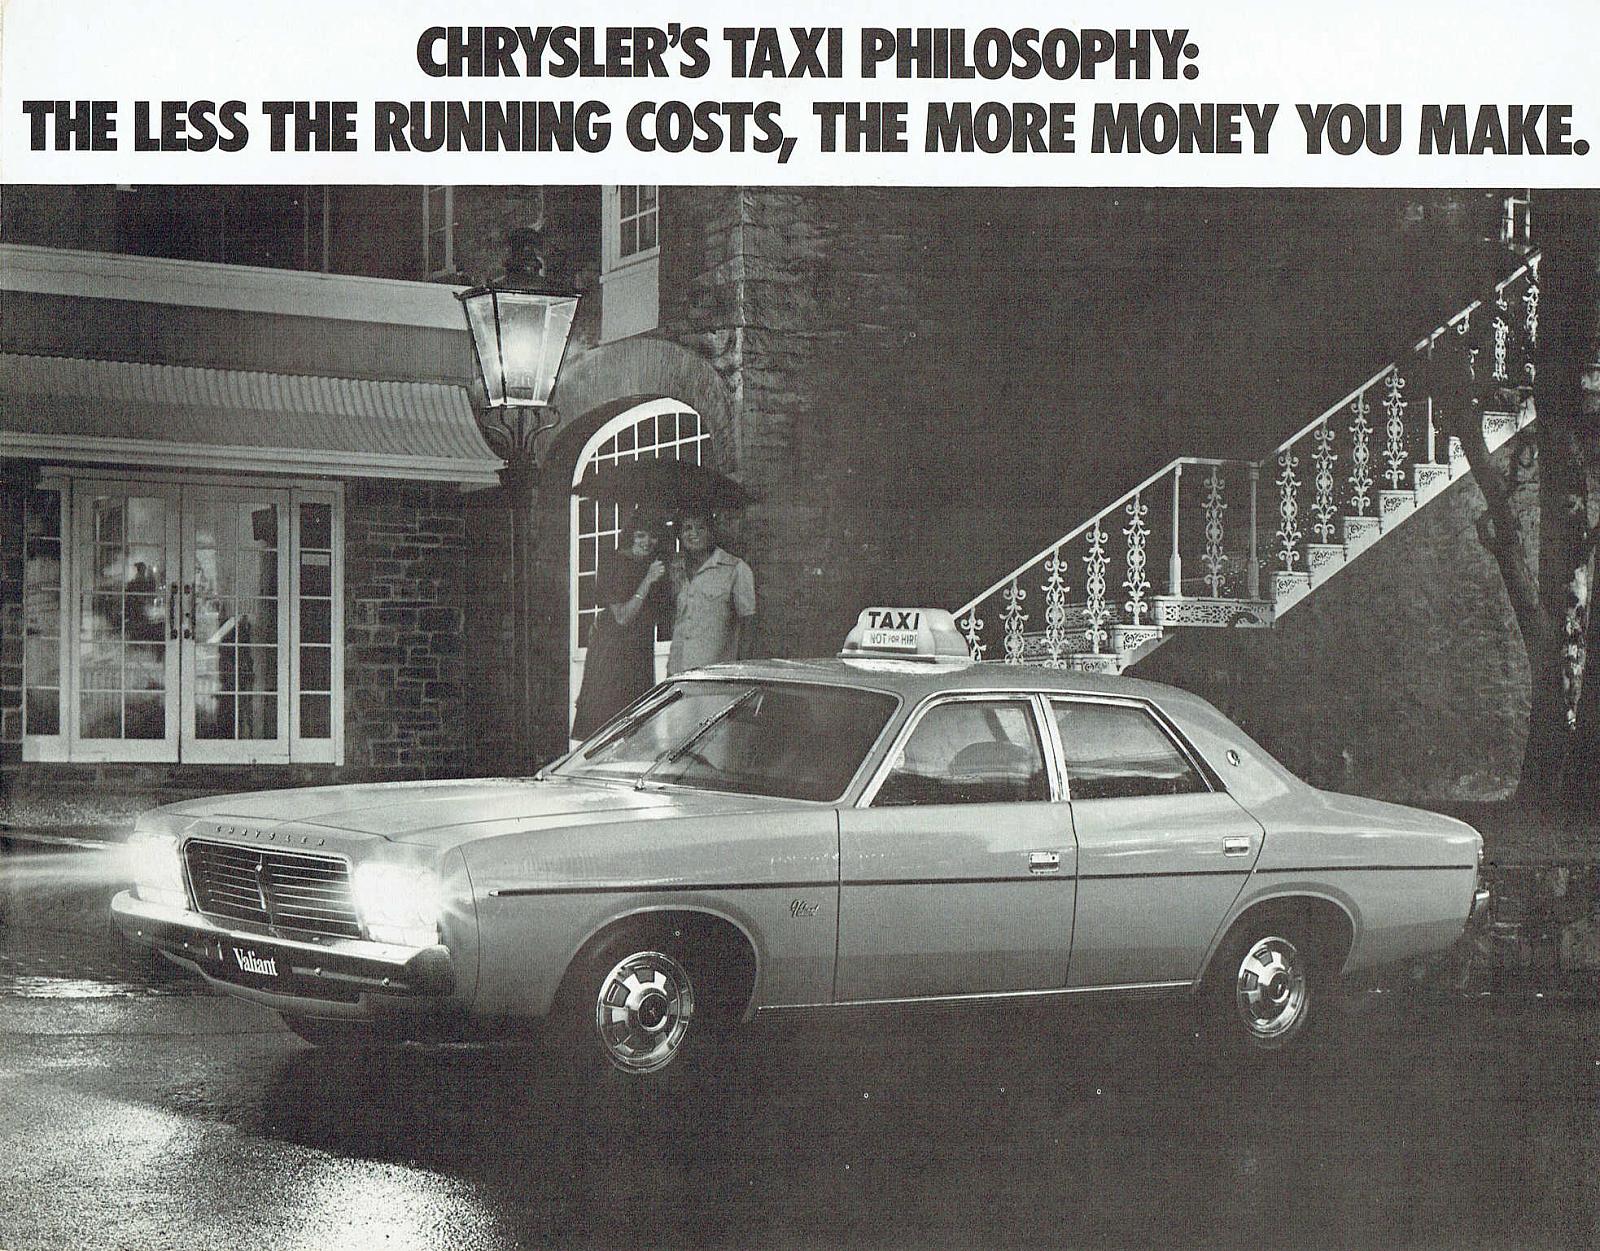 1976 Chrysler CL Valiant Taxi Brochure